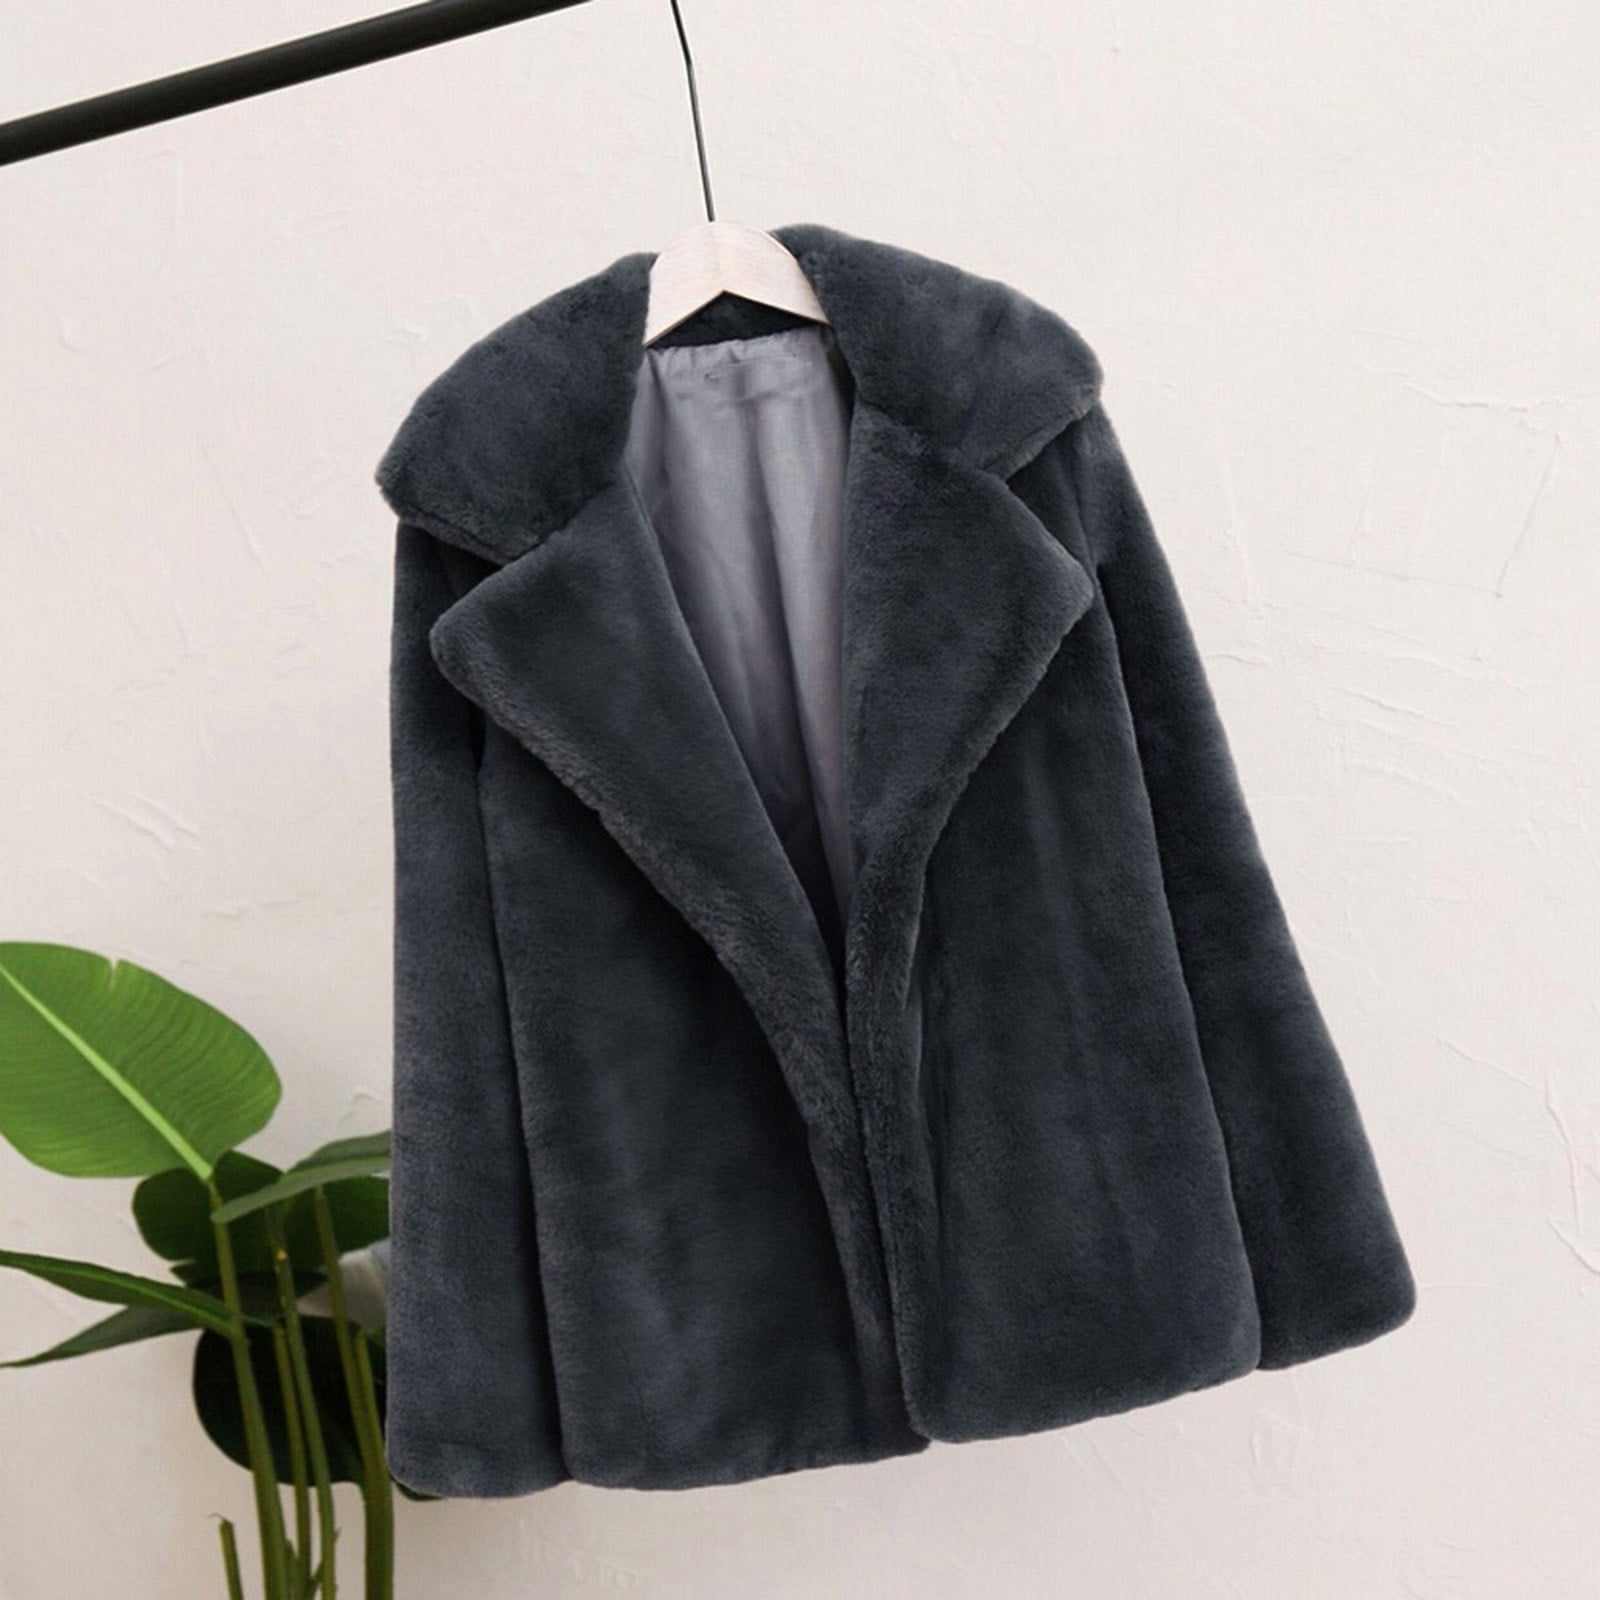 Women Winter Warm Thick Coat Solid Overcoat Outercoat Jacket Cardigan Coat